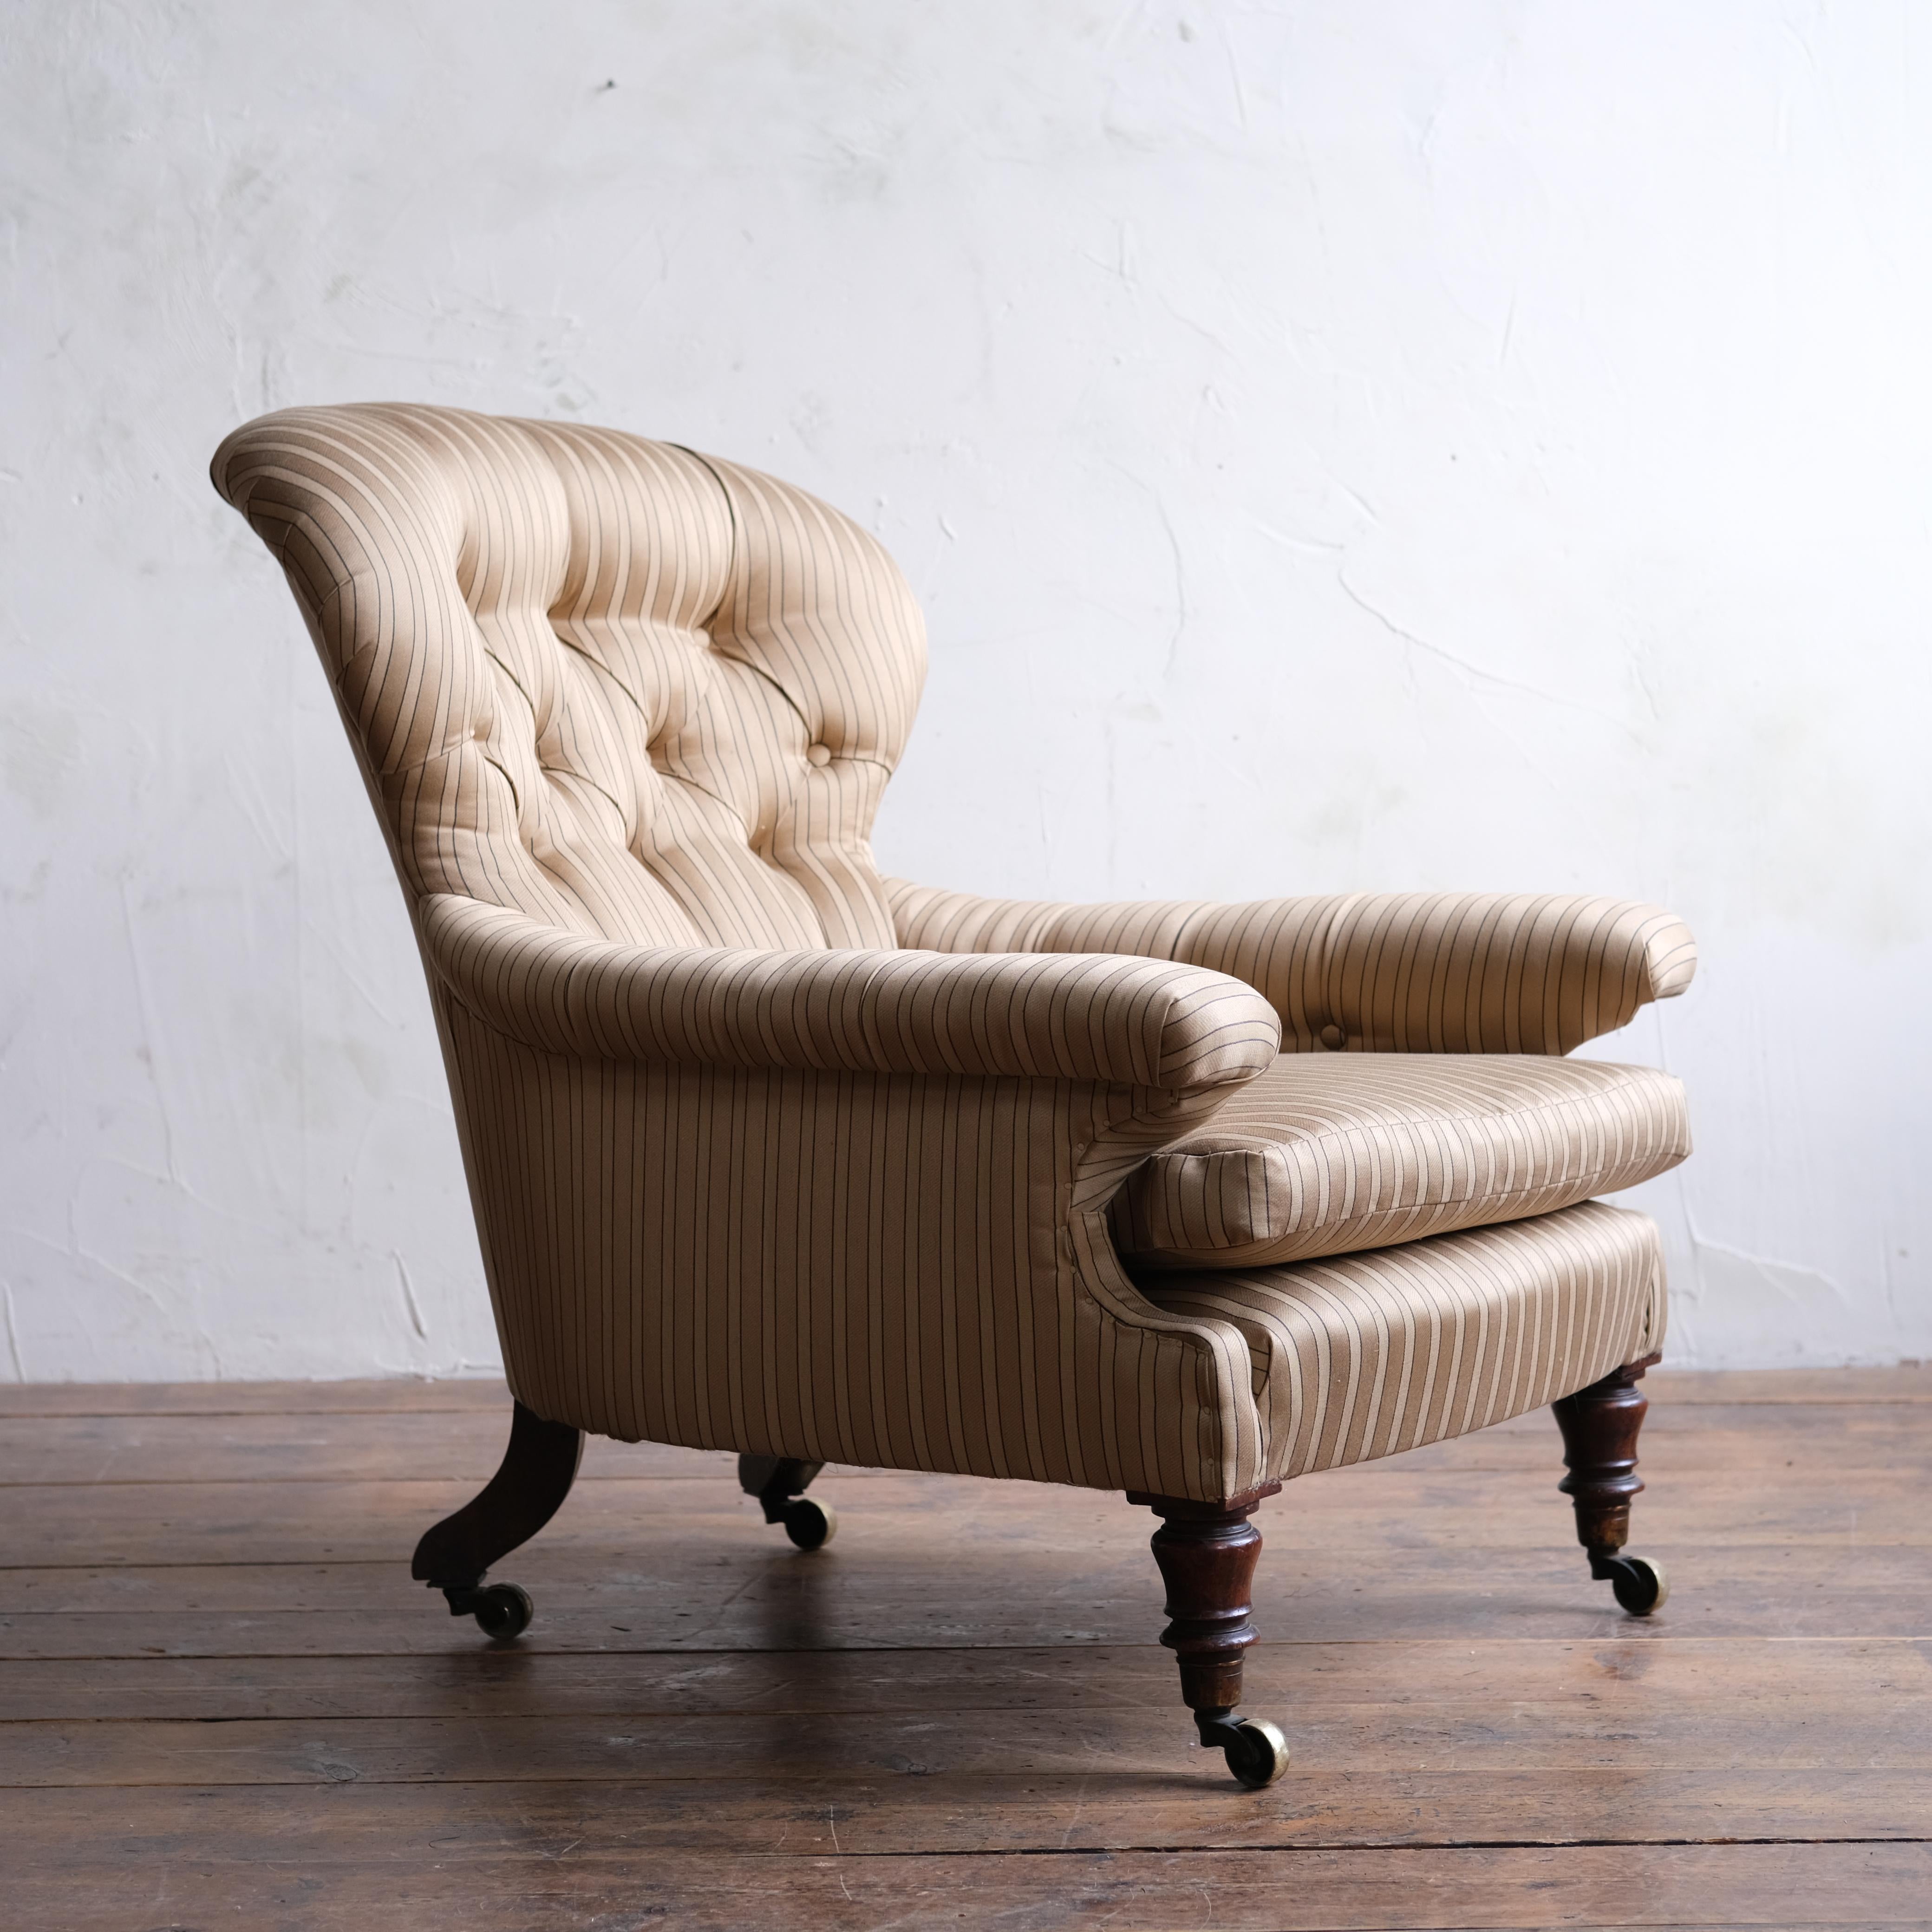 Un superbe fauteuil à assise profonde du milieu du 19e siècle par Holland & sons. Il repose sur des pieds en noyer, tous munis de roulettes d'origine en laiton de W Hopkins & son. Nouvellement tapissé d'une bande satinée or/anthracite par 